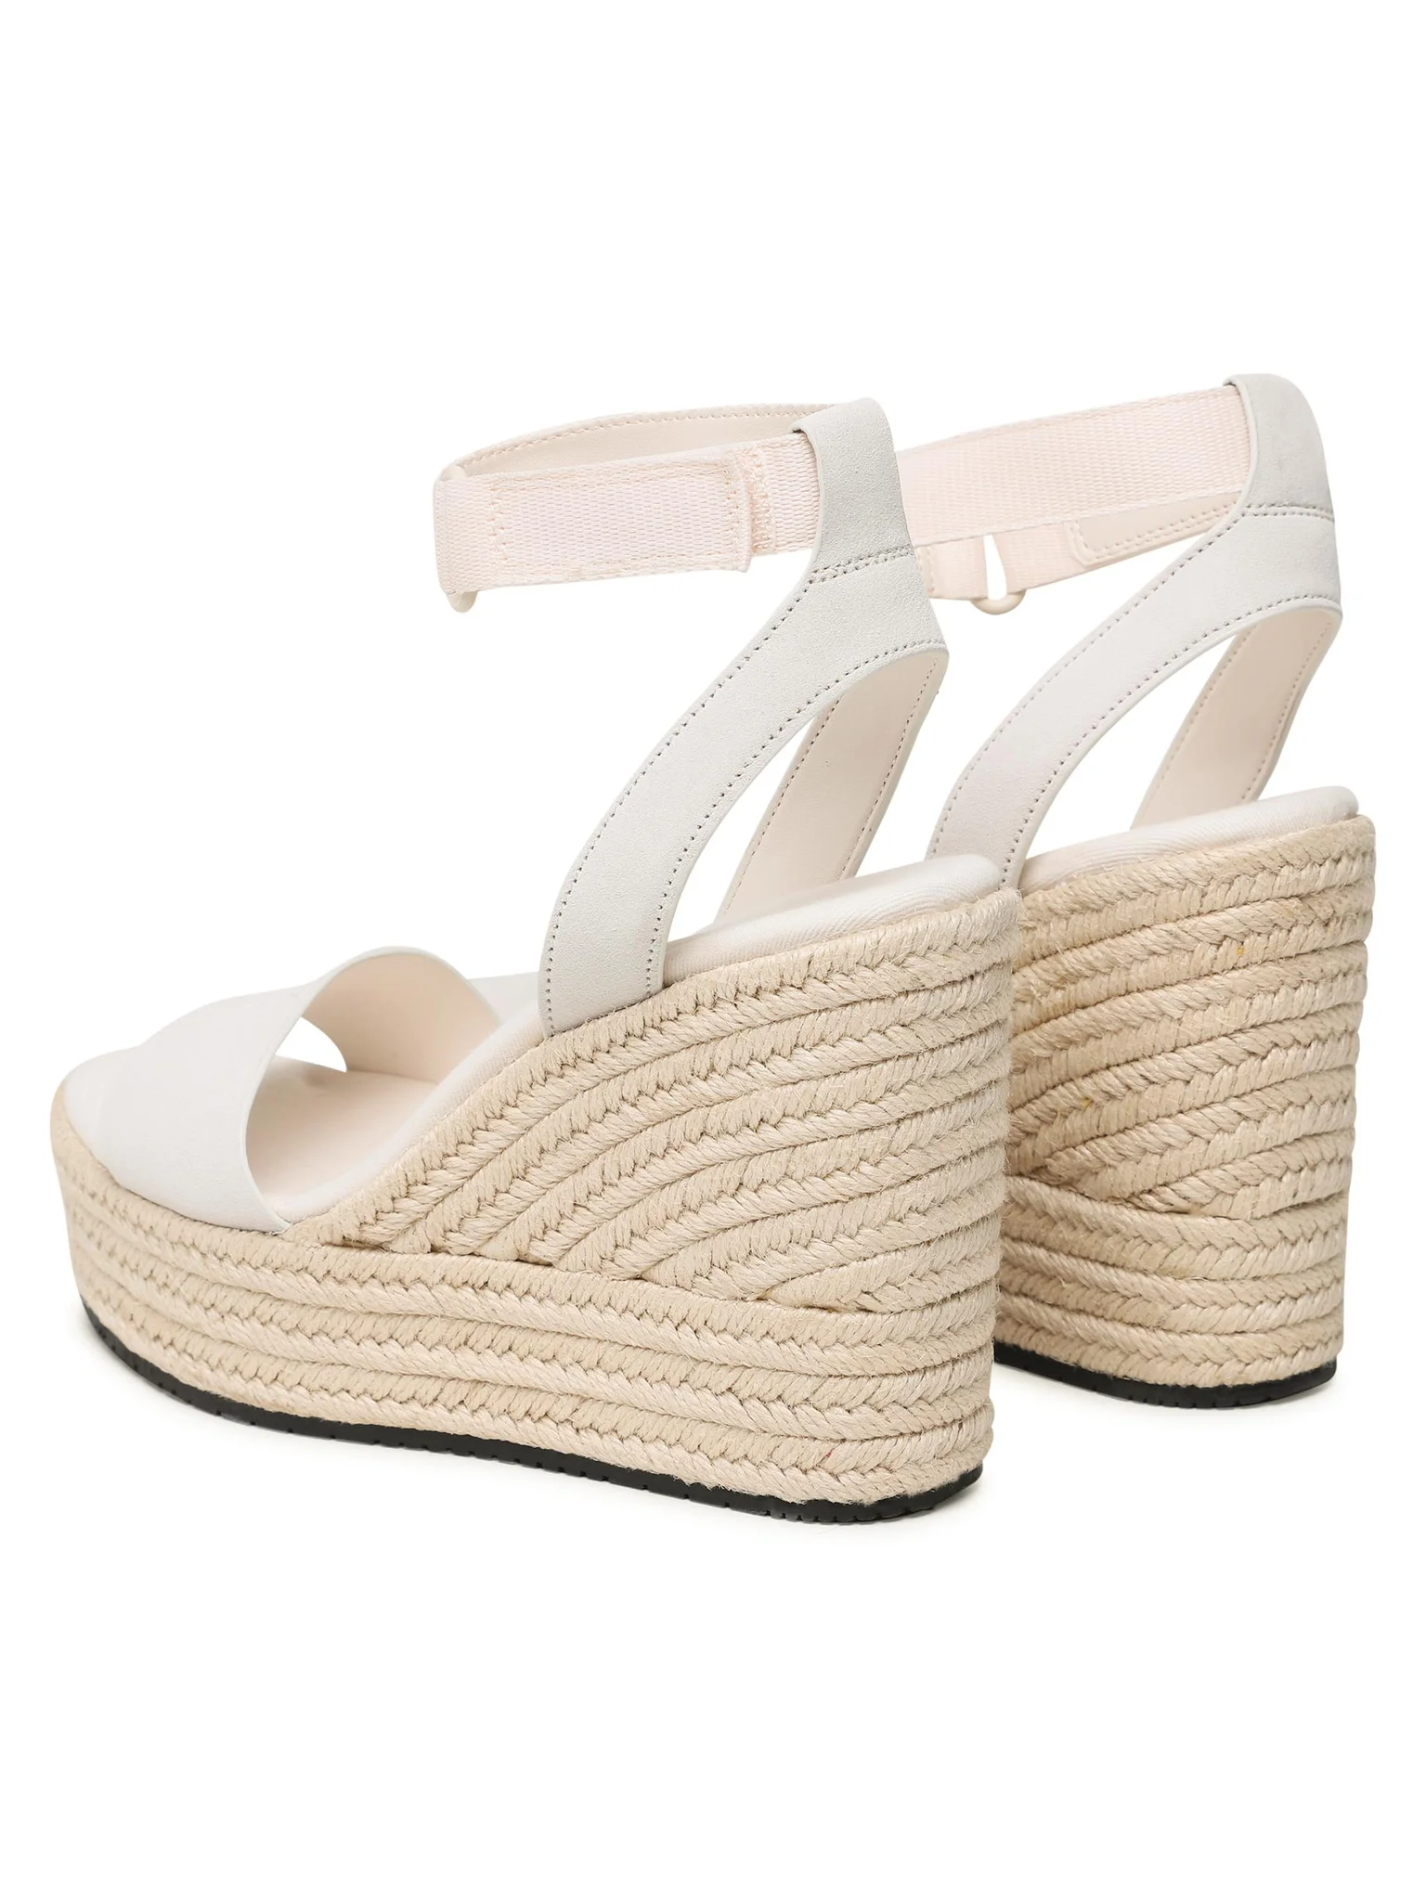 Chaussures de ville  Calvin klein YW0YW01026 0F9 Creamy White/Bright White